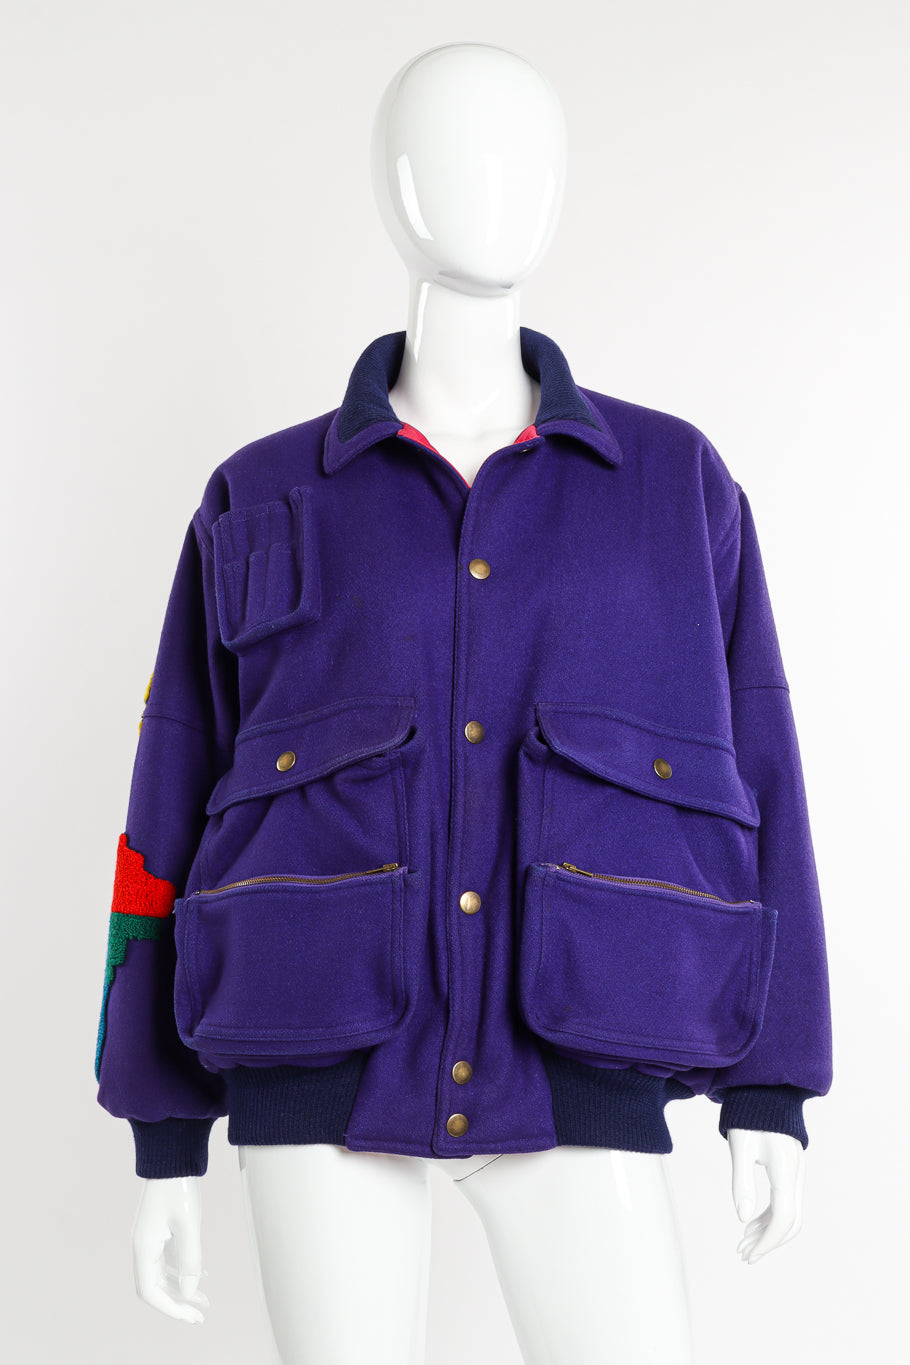 Vintage Nobuo Ikeda World Patch Jacket front on mannequin @recessla